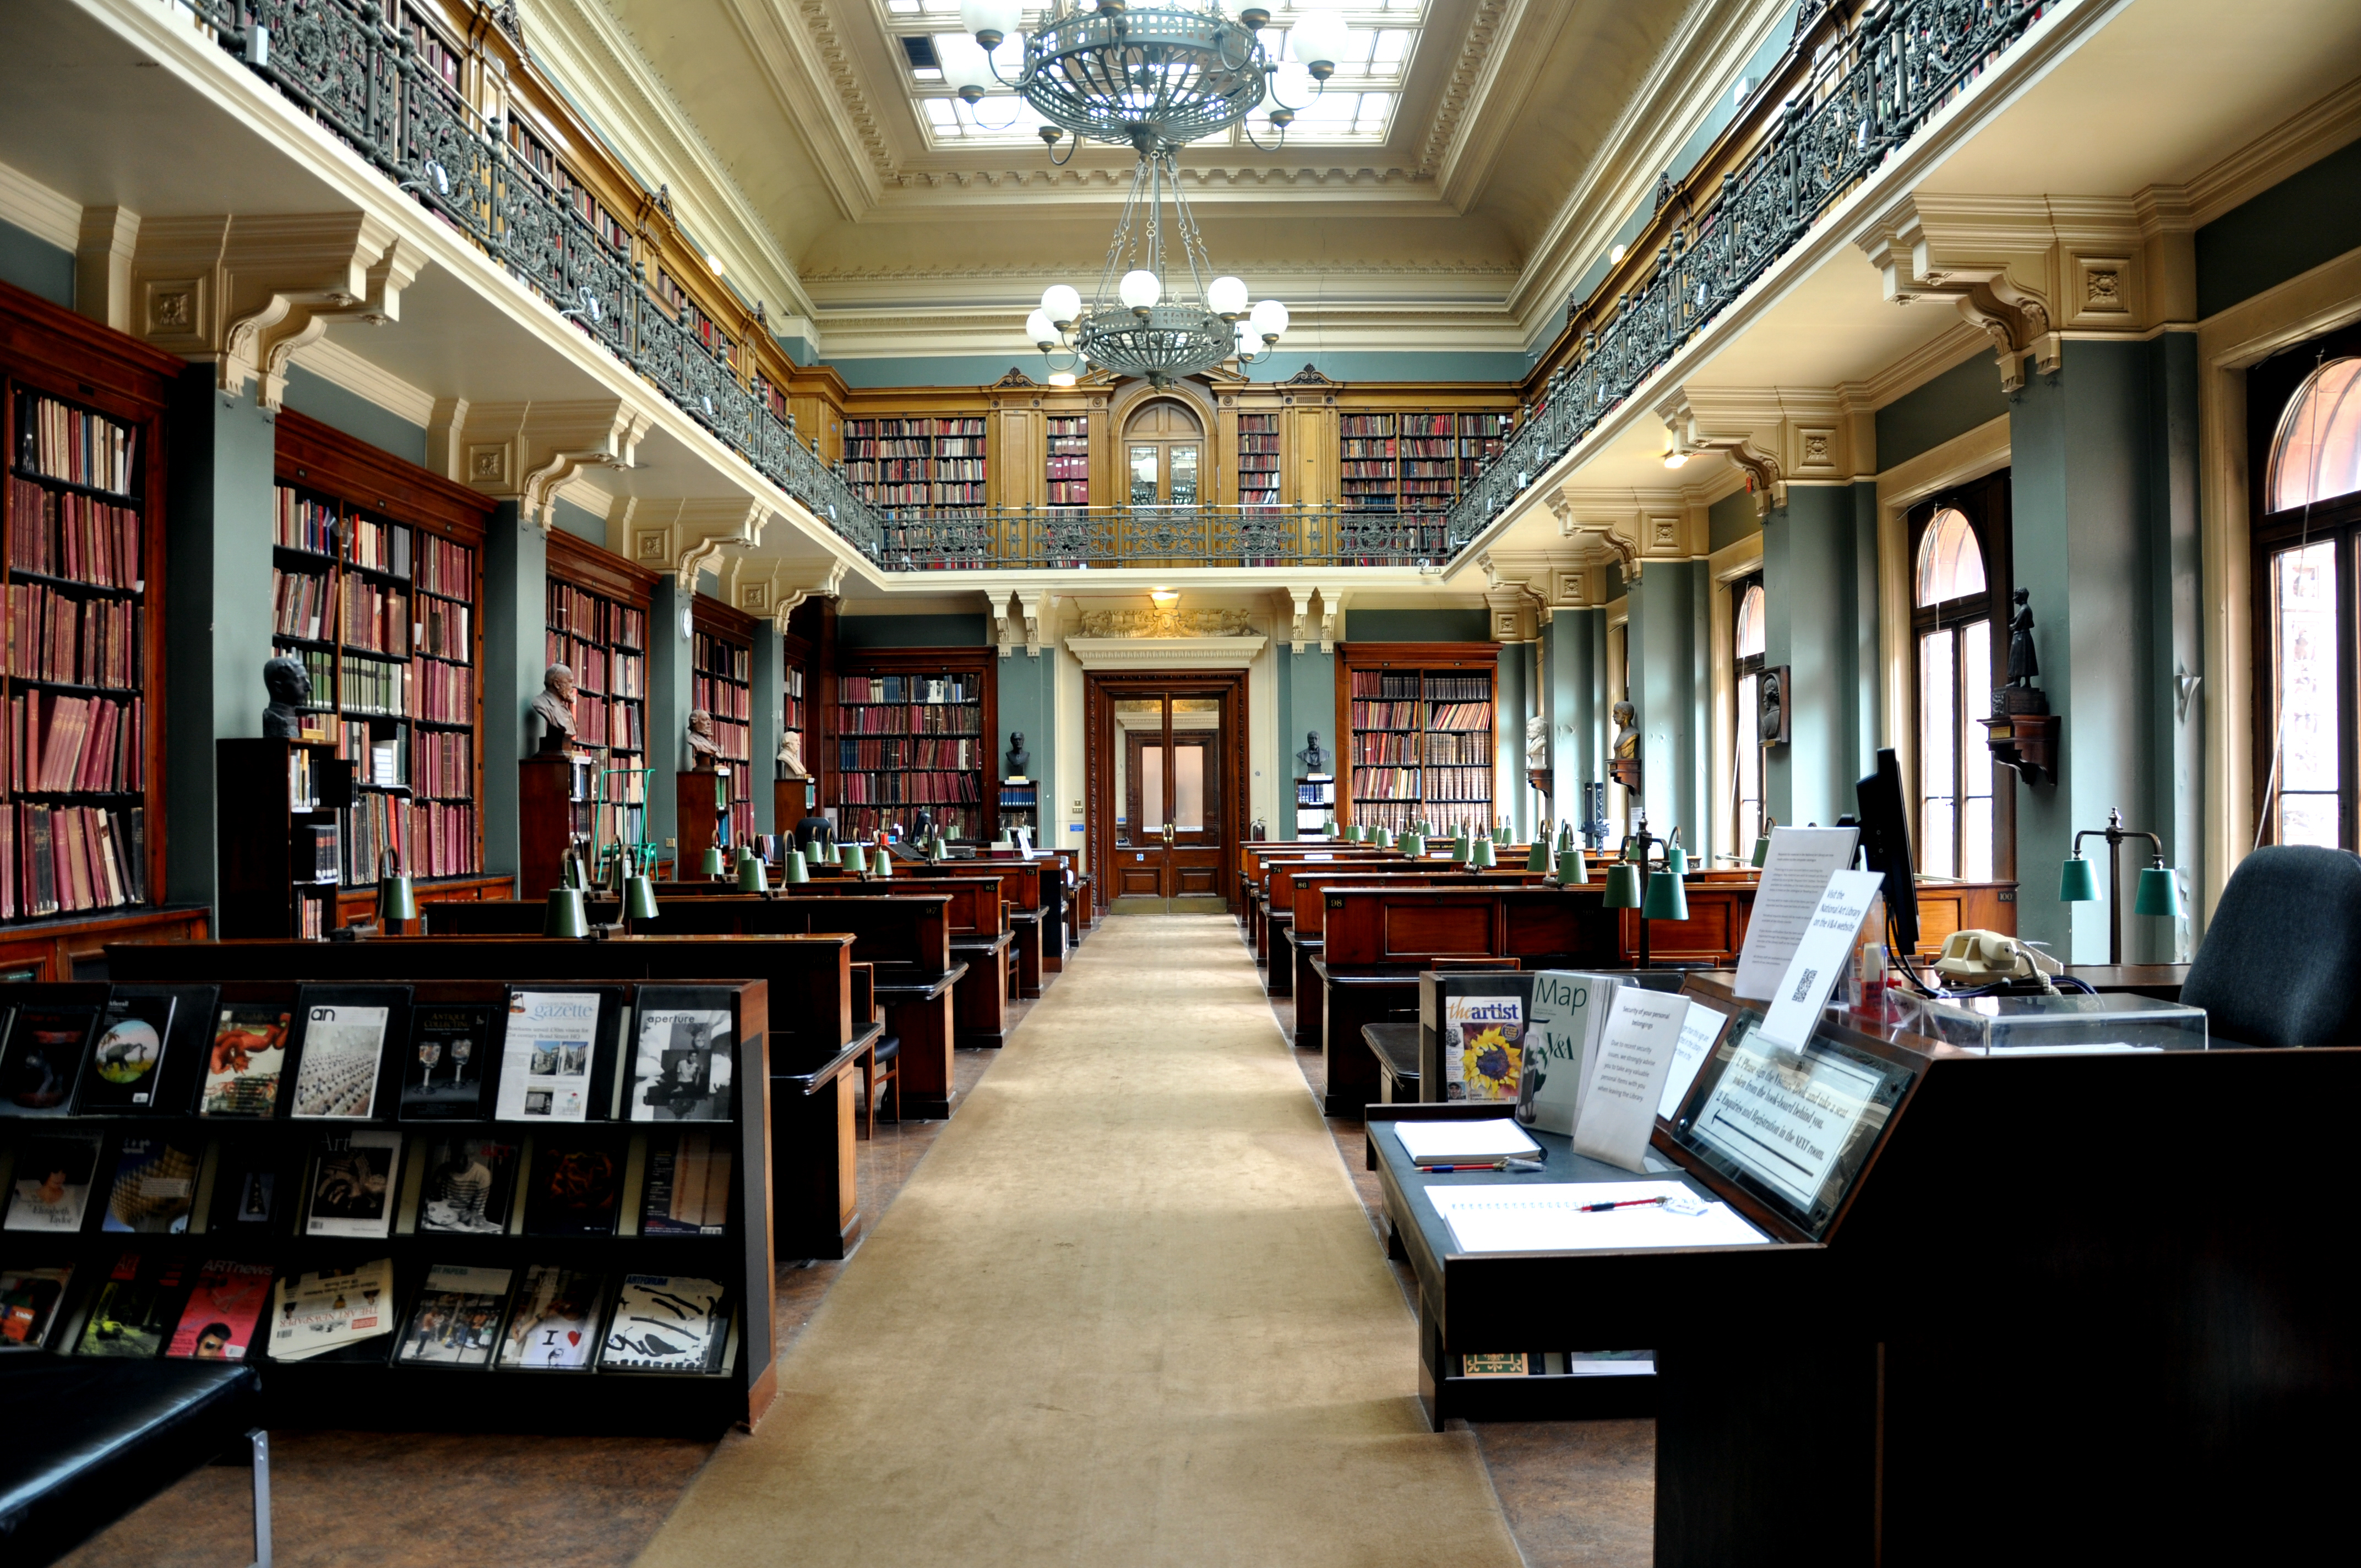 Page library. Библиотека британского музея в Лондоне. Британская библиотека (British Library). Читальный зал британского музея. Национальная библиотека Лондона.